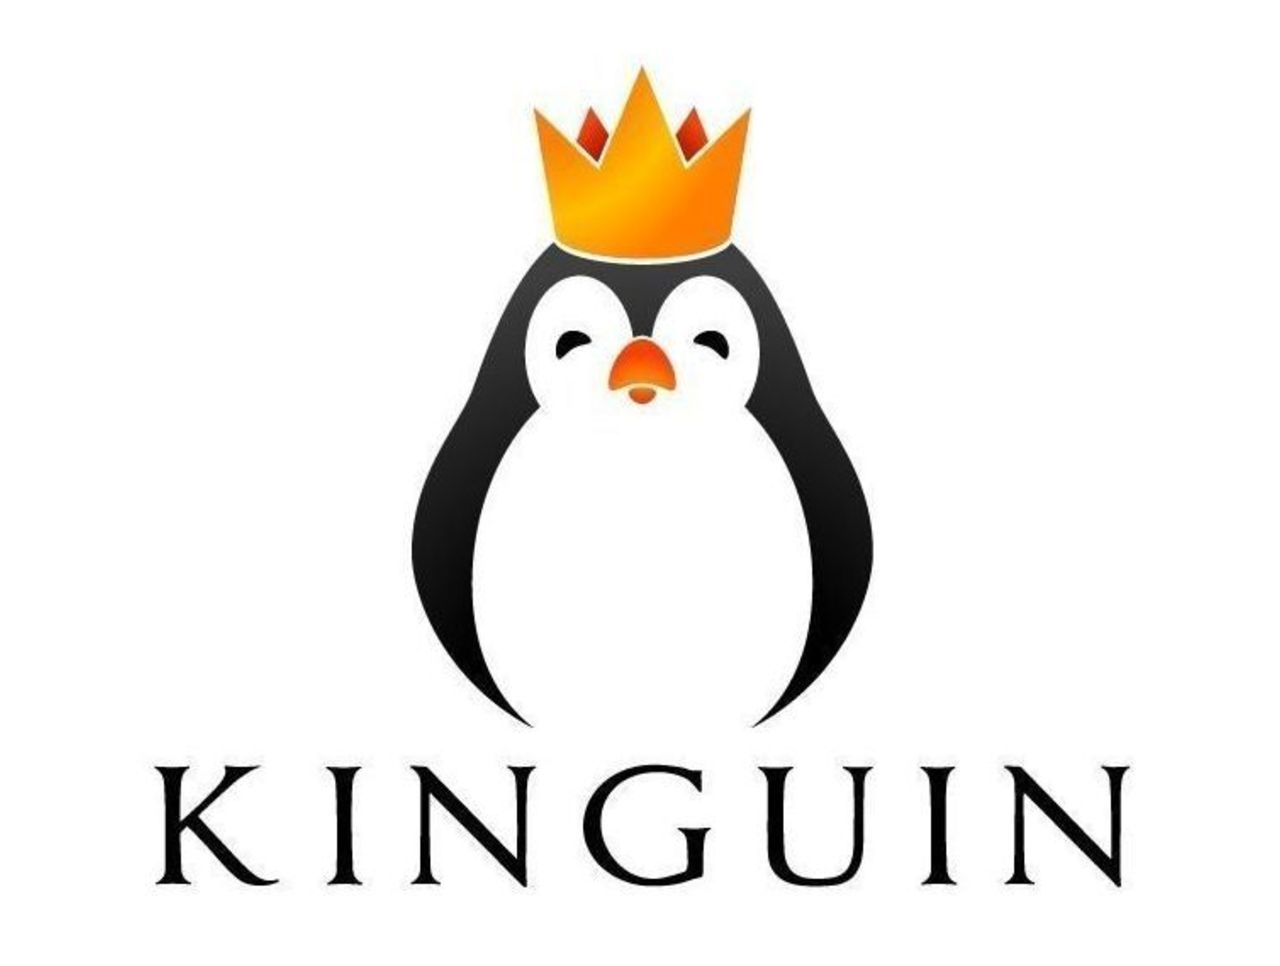 kingneng营养粉 (Kingnet kingnet)